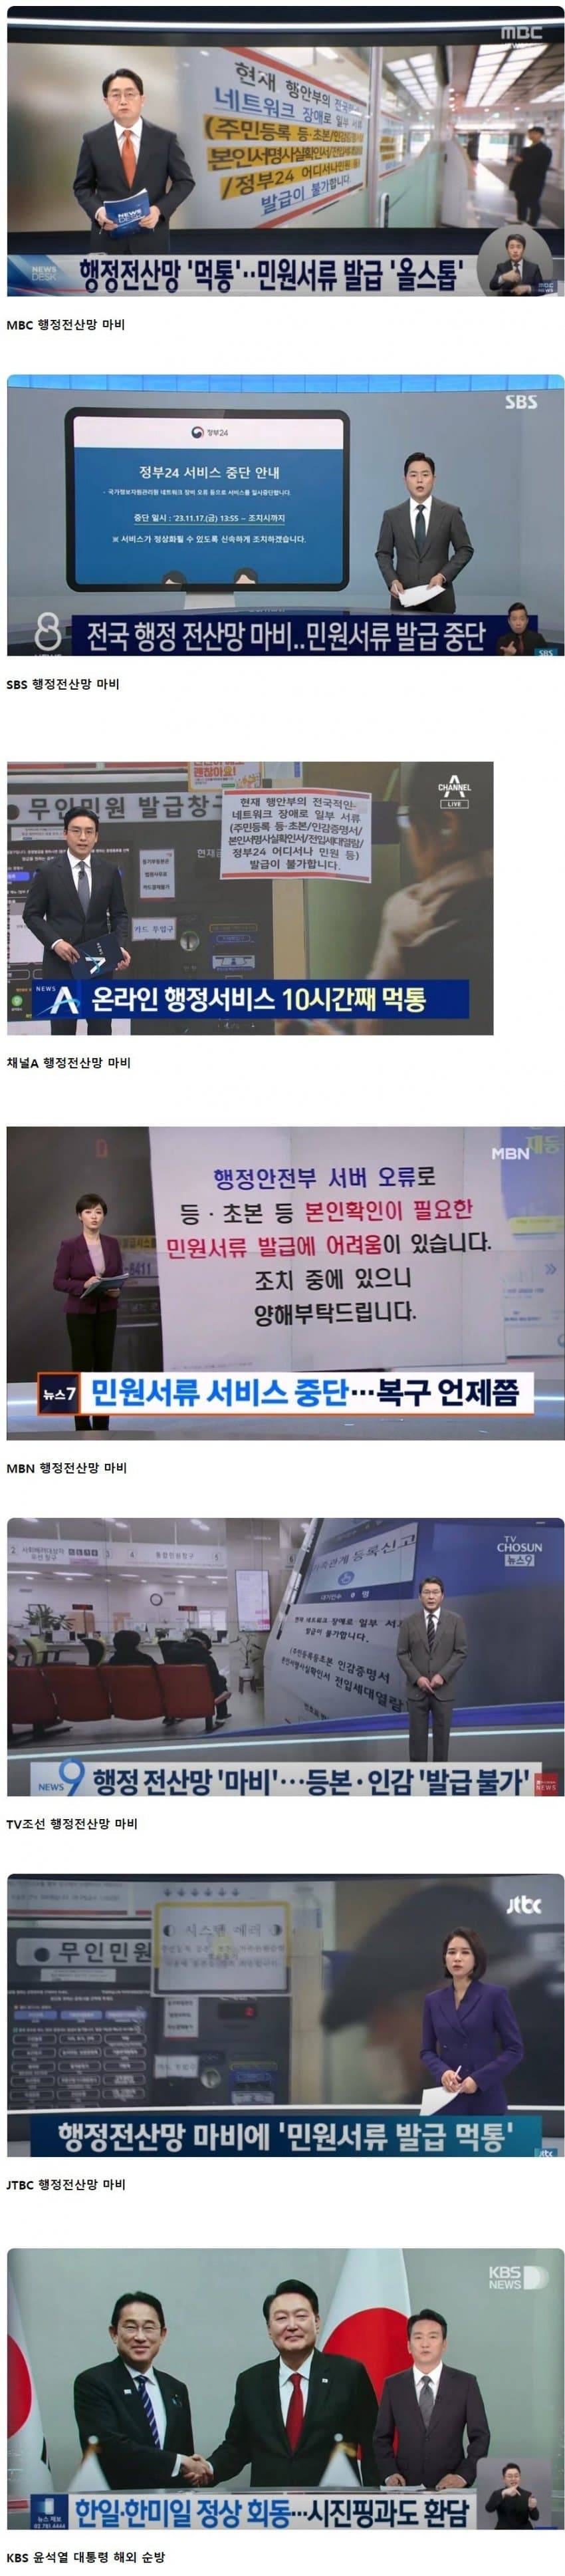 어메이징한 언론사별 헤드라인 보도